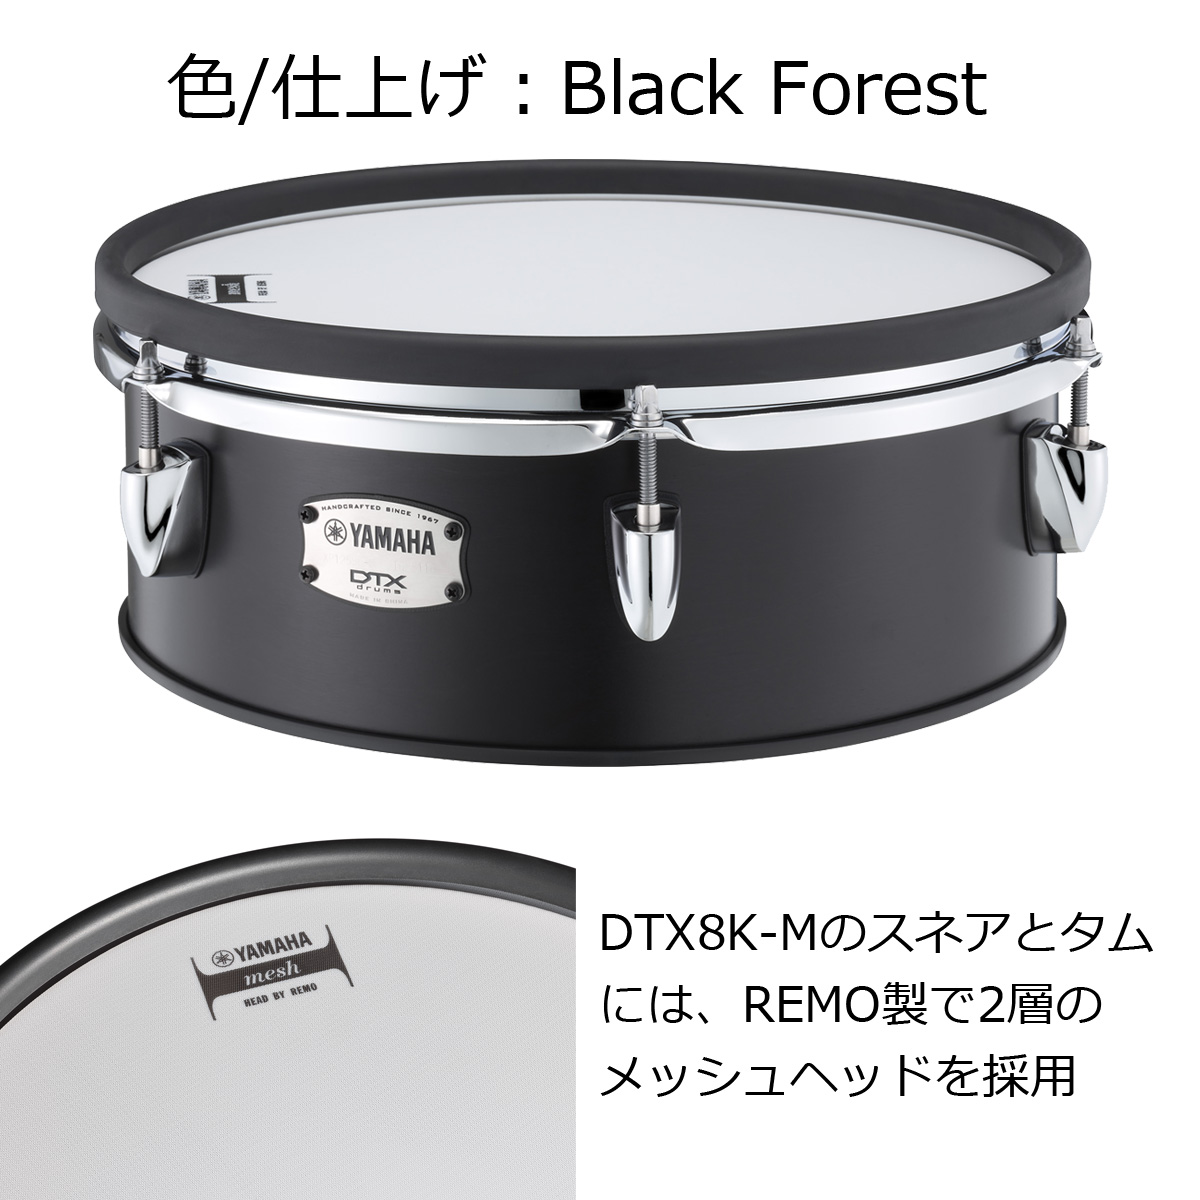 YAMAHA / DTX8K-M BLACK FOREST (メッシュヘッド仕様) オプションフル